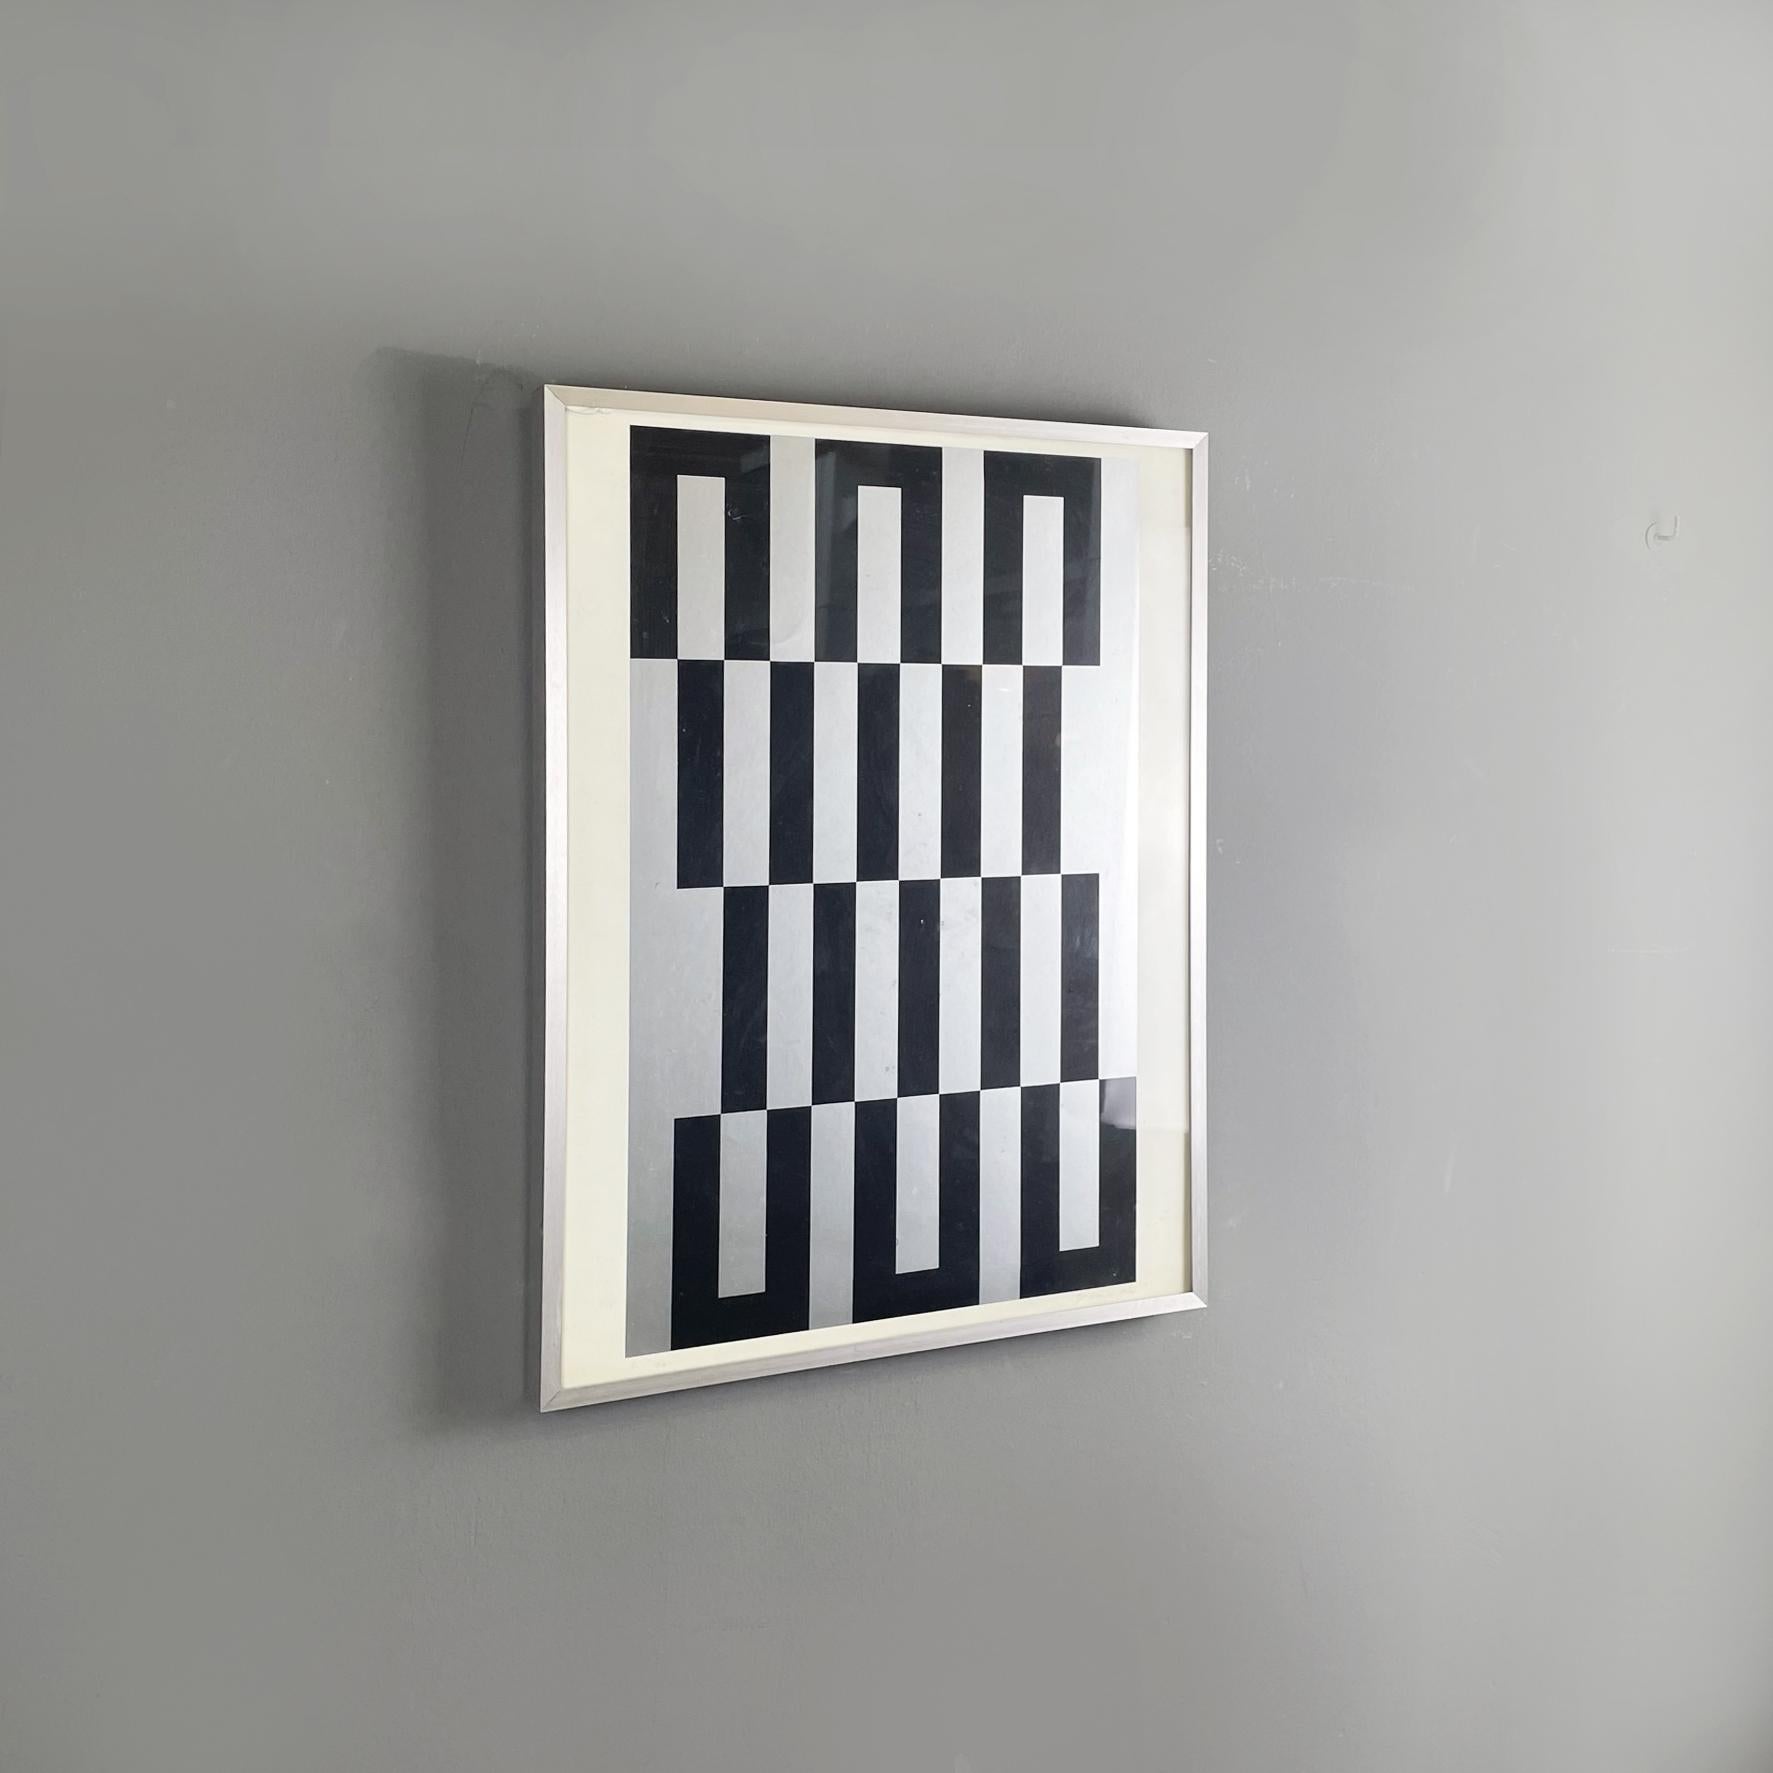 Französische Moderne Grauer schwarzer weißer Siebdruck von Julije Knifer, 1970er Jahre
Siebdruck in Hellgrau und Schwarz auf Papier. Das Motiv des Siebdrucks ist ein geometrisches Motiv. Mit silbernem Metallrahmen.
Entworfen und hergestellt von